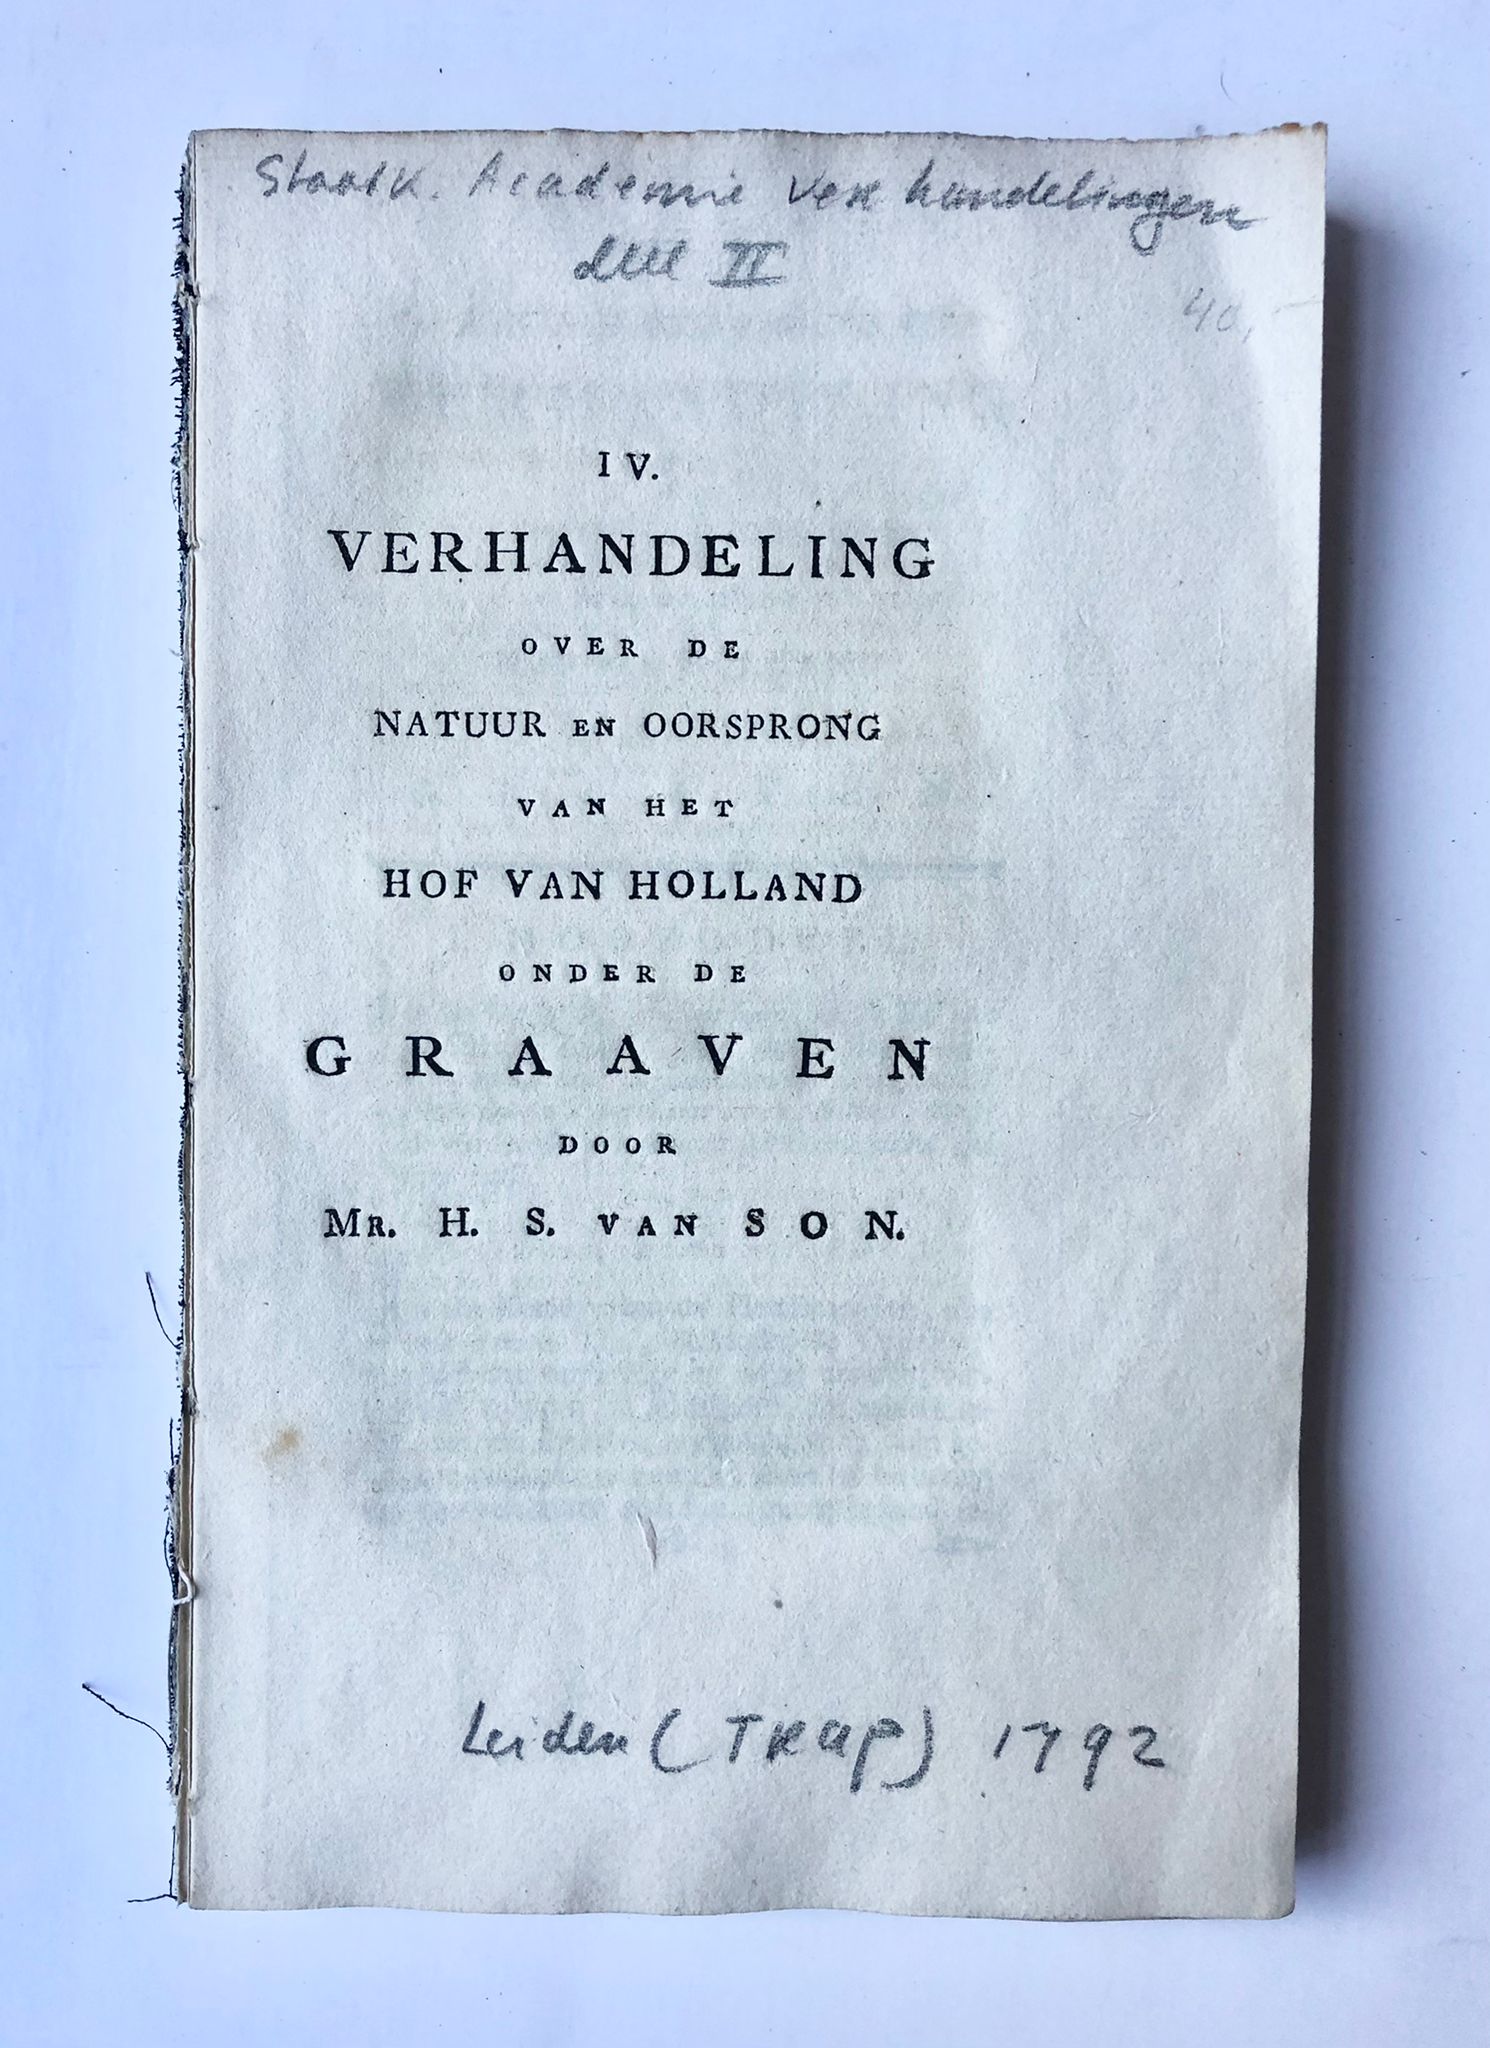 [Political book, 1792] IV. Verhandeling over de natuur en oorsprong van het Hof van Holland onder de Graaven door Mr. H. S. van Son. Academie van handelingen part II. Leiden, 1792, 184 t/m 324 pp.